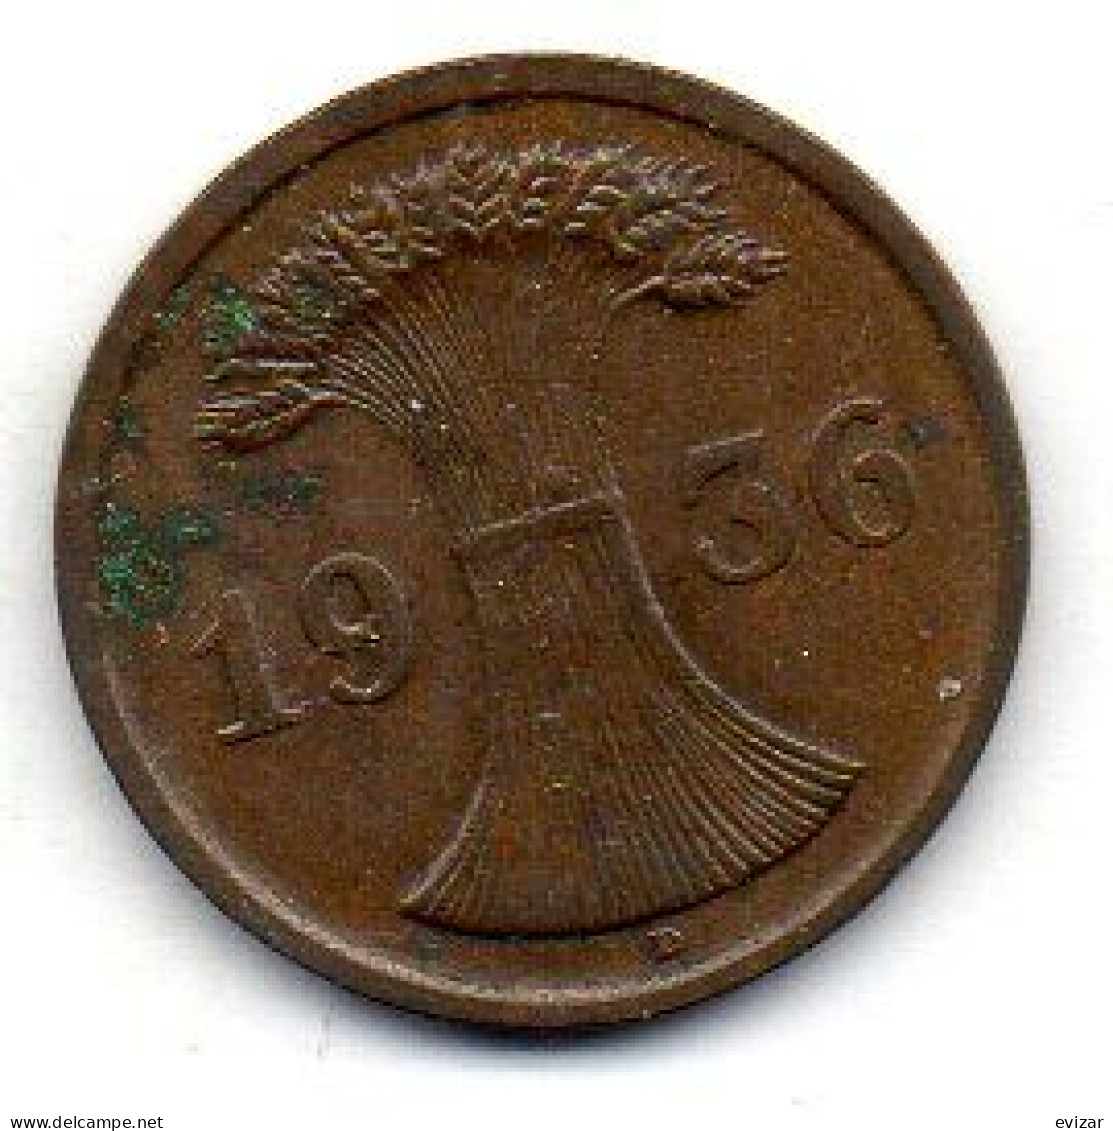 GERMANY - WEIMAR REPUBLIC, 2 Reichs Pfennig, Bronze, Year 1936-D, KM # 38 - 2 Rentenpfennig & 2 Reichspfennig